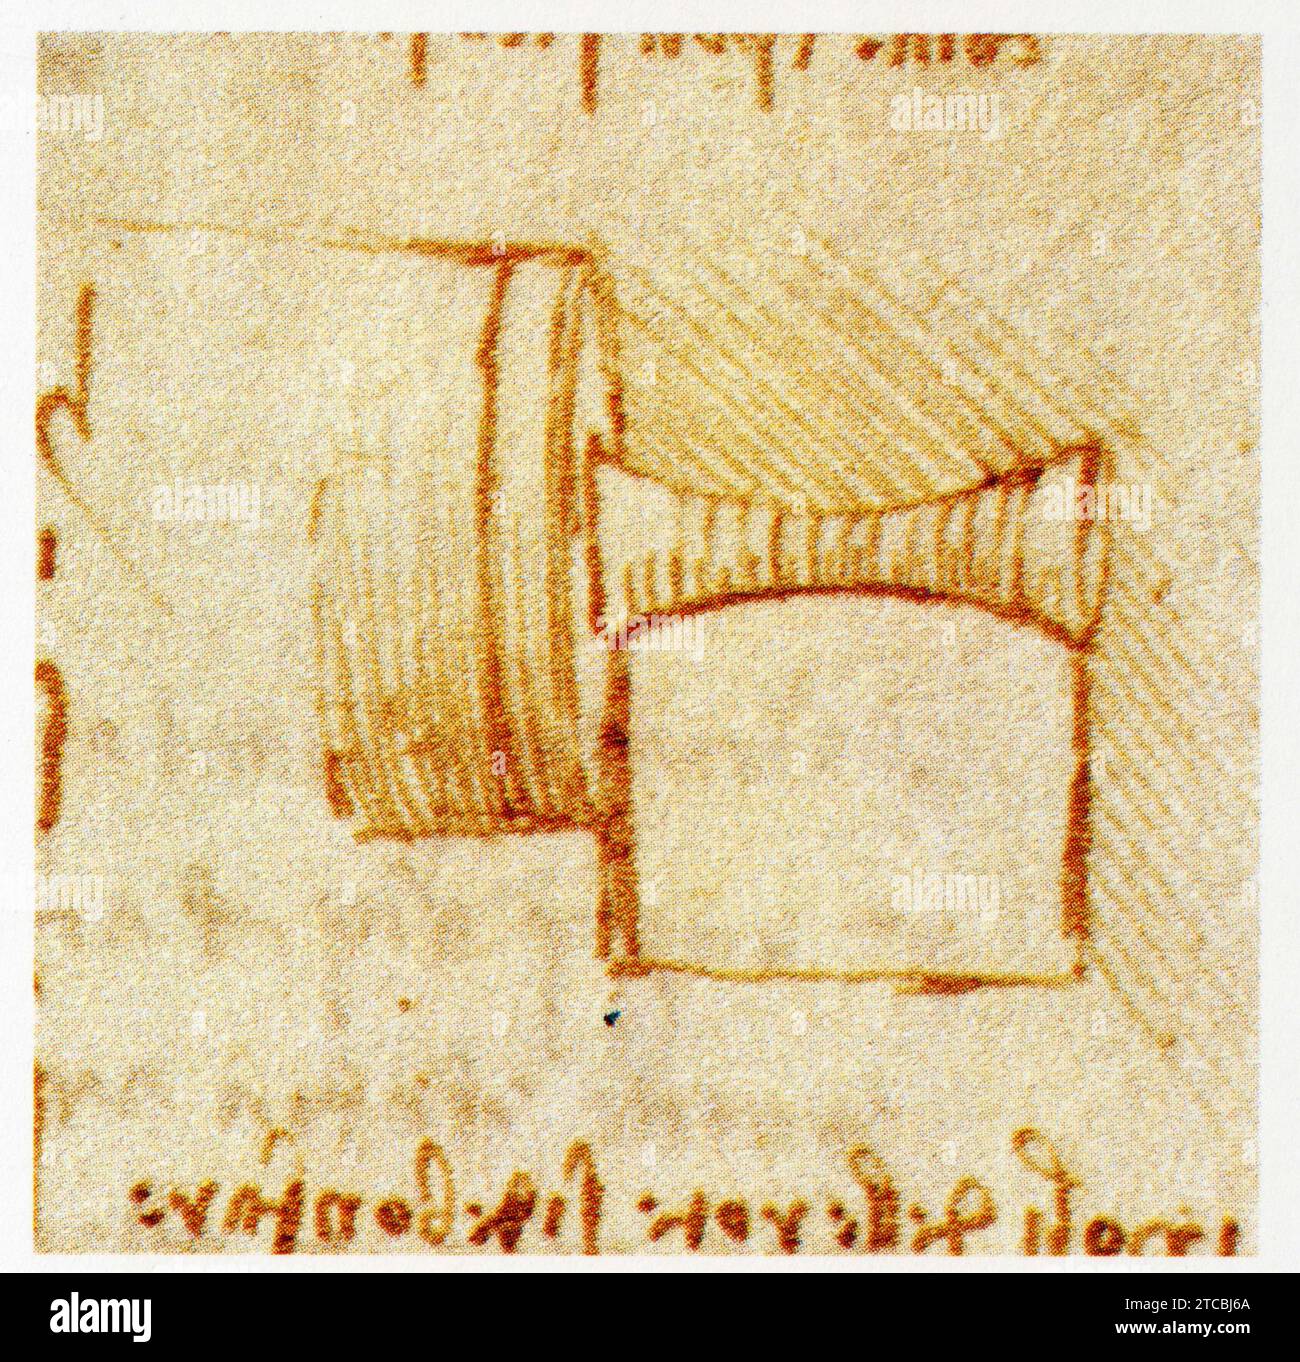 Leonardo da Vinci.1452-1519.Usure de l'axe. Comment les axes s'usent depuis le milieu en ligne courbe. Stock Photo